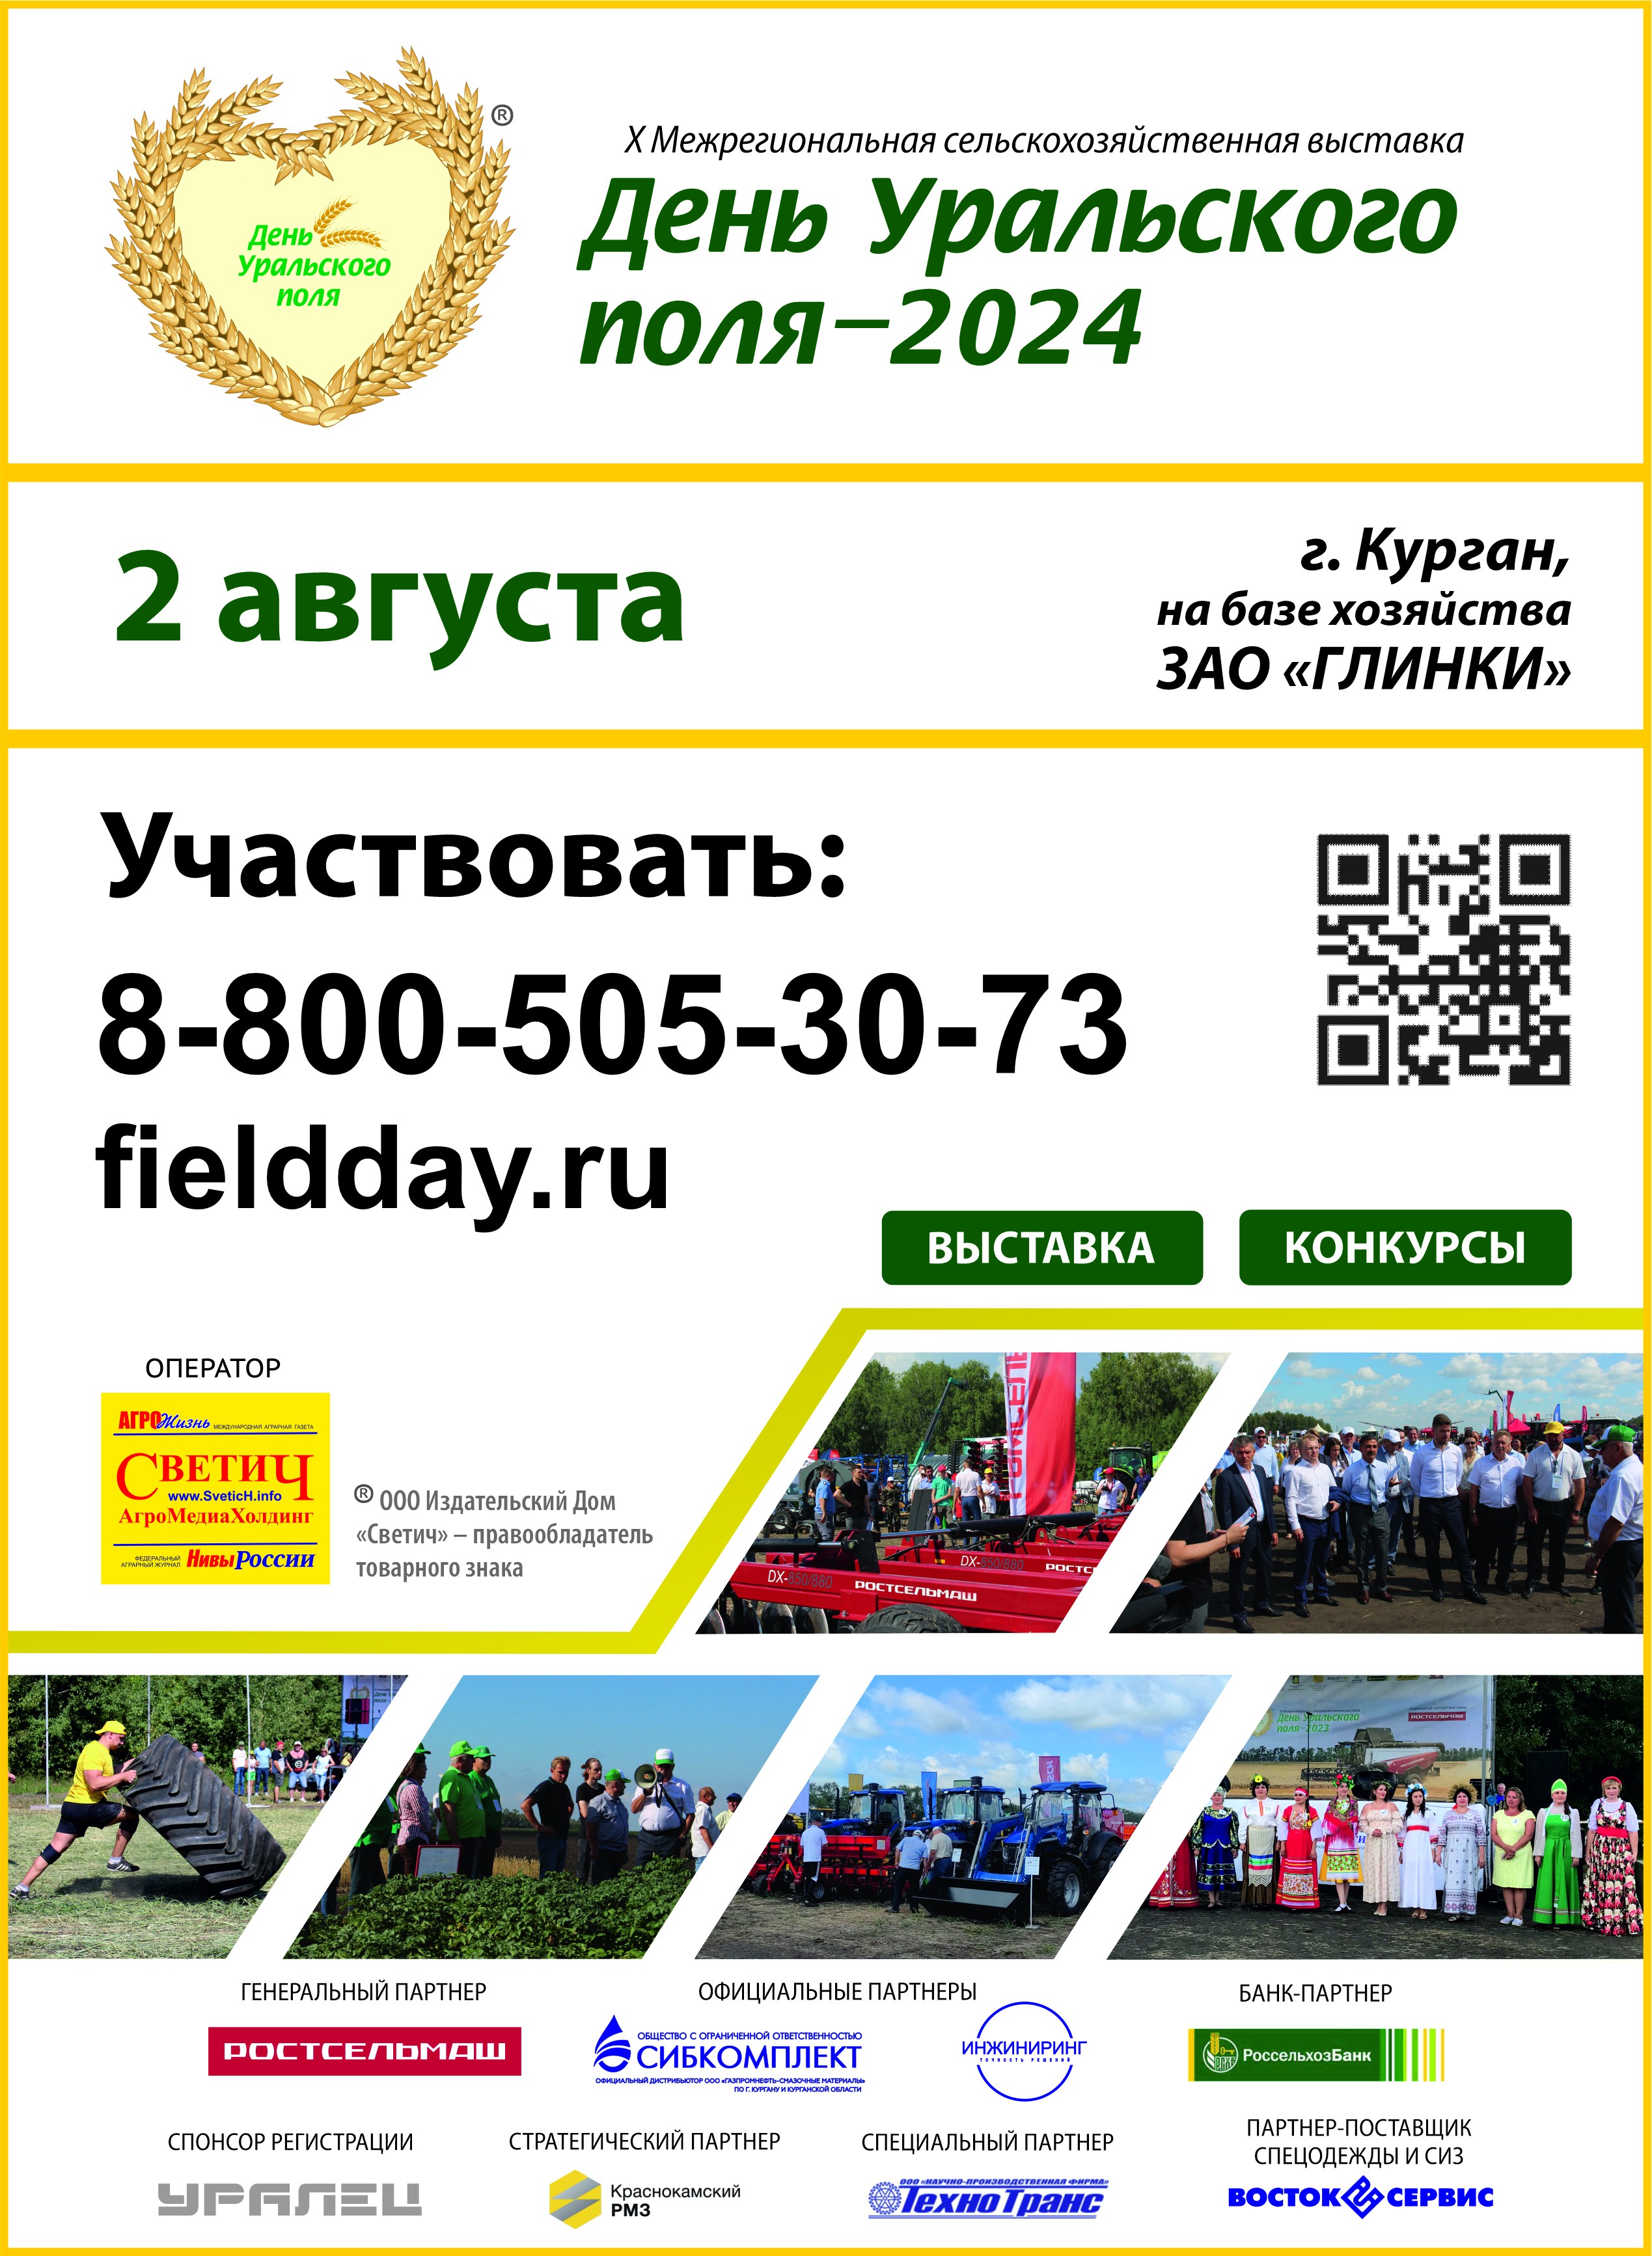 2 августа в городе Кургане на полях ЗАО «Глинки» состоится десятая окружная выставка «День Уральского поля-2024».